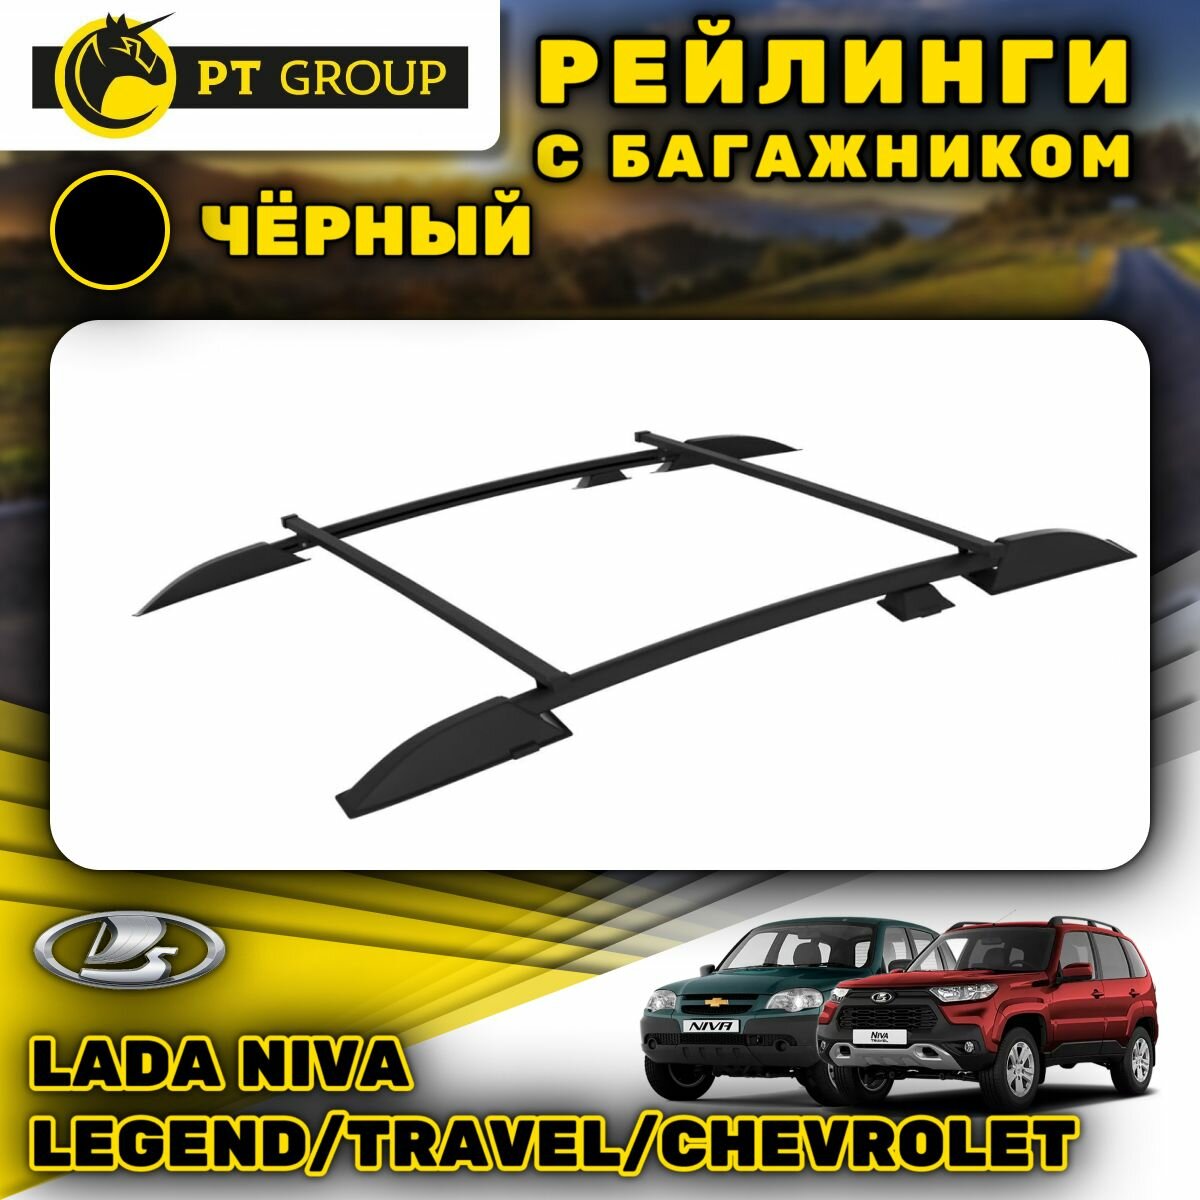 Рейлинги ПТ Групп "Усиленный" для Lada Niva (2020-), Travel (2021-), Chevrolet (2009-2020), черный муар LNV551504